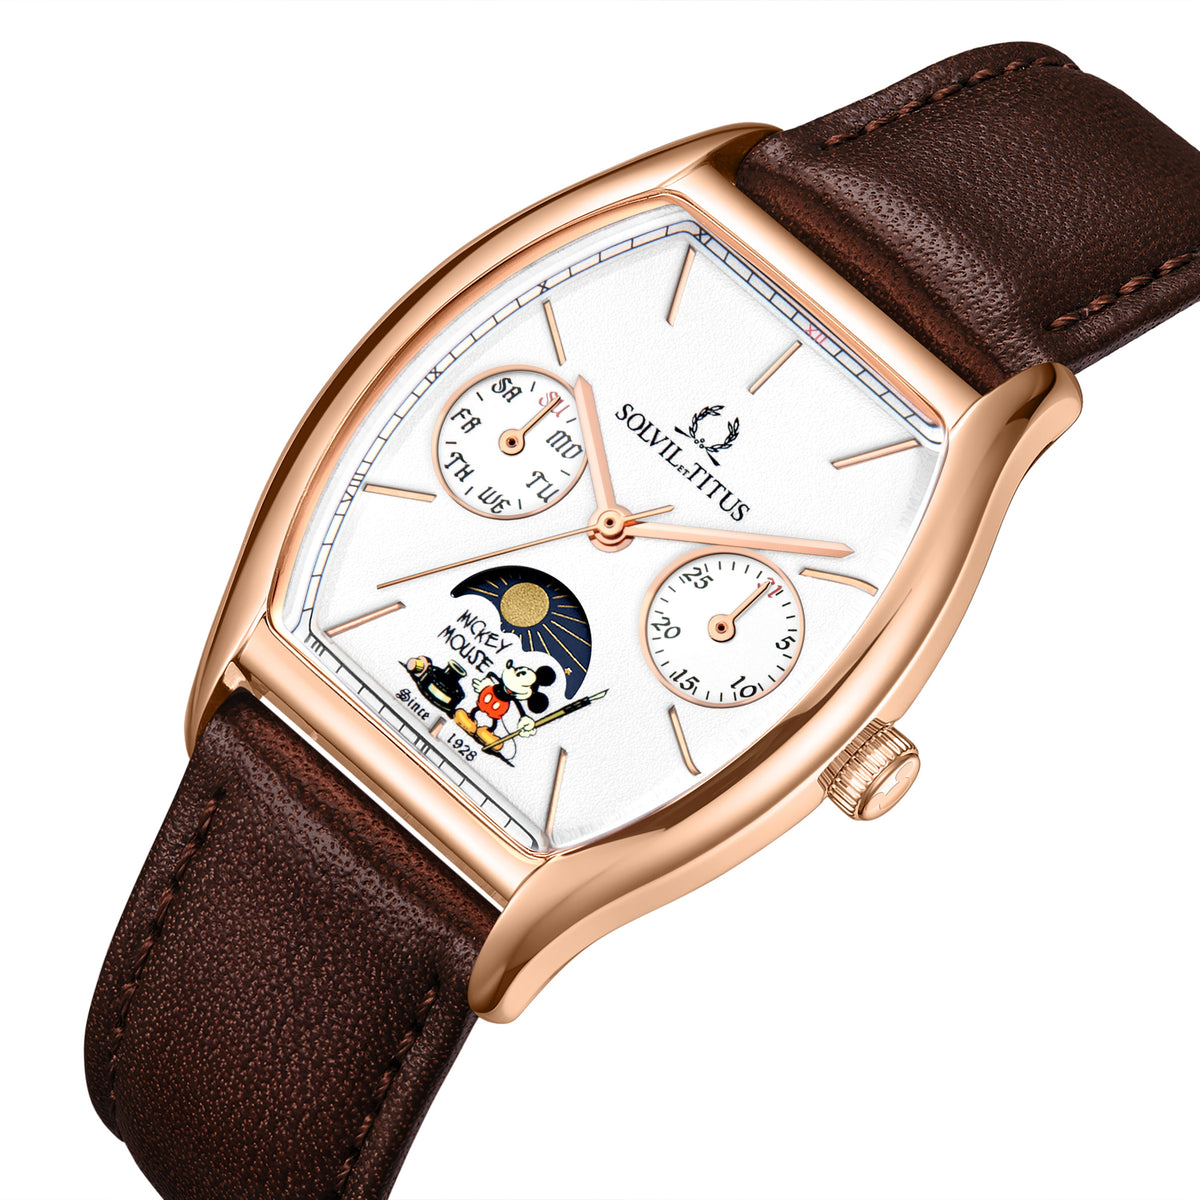 คอลเลกชัน Barista “Mickey Mouse 95th Anniversary” นาฬิกาผู้หญิง ลิมิเตดอิดิชัน เรือนสีโรสโกลด์ มัลติฟังก์ชัน บอกกลางวัน-กลางคืน ระบบควอตซ์ สายหนัง ขนาดตัวเรือน 31 มม. (W06-03356-002)